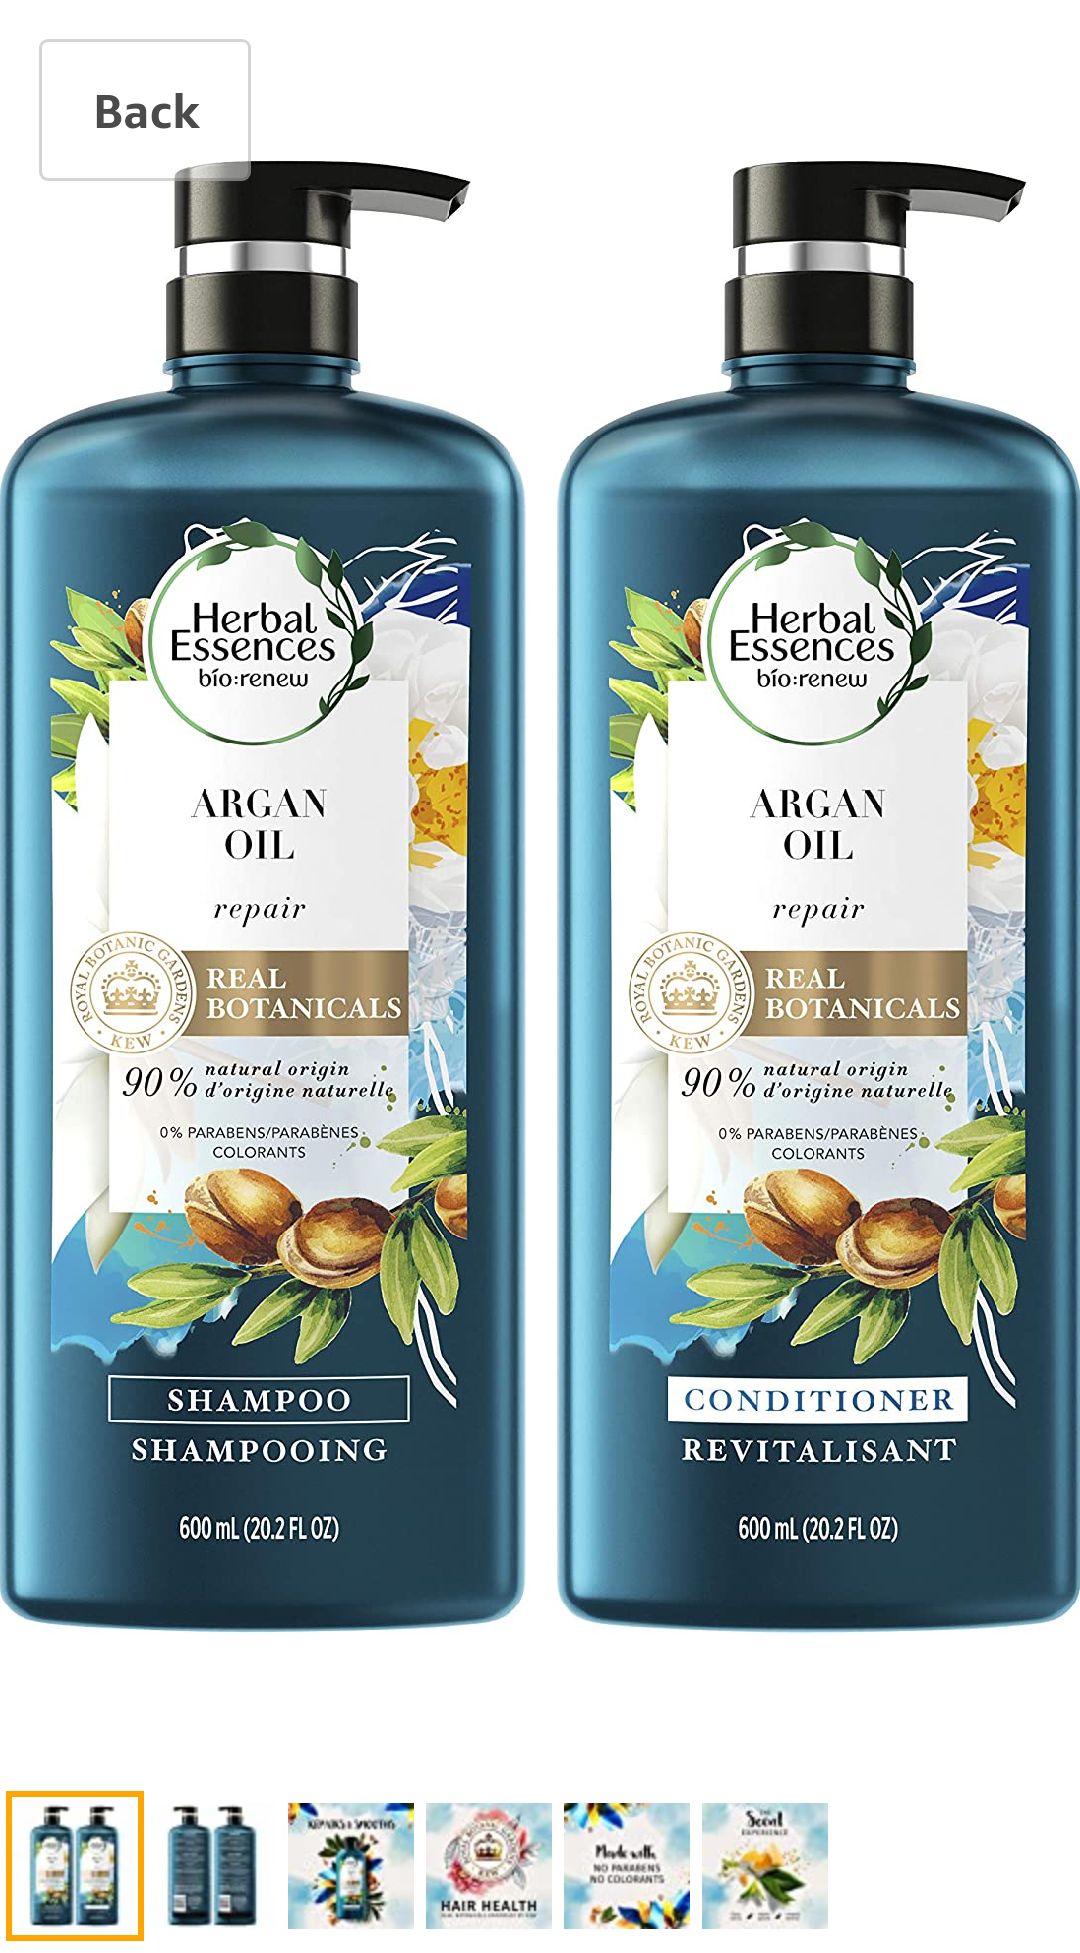 伊卡璐阿甘油洗护套装Herbal Essences, Repairing Argan Oil Of Morocco Shampoo and Conditioner set With Natural Source Ingredients, Color Safe, BioRenew, 20.2 fl oz: Beauty